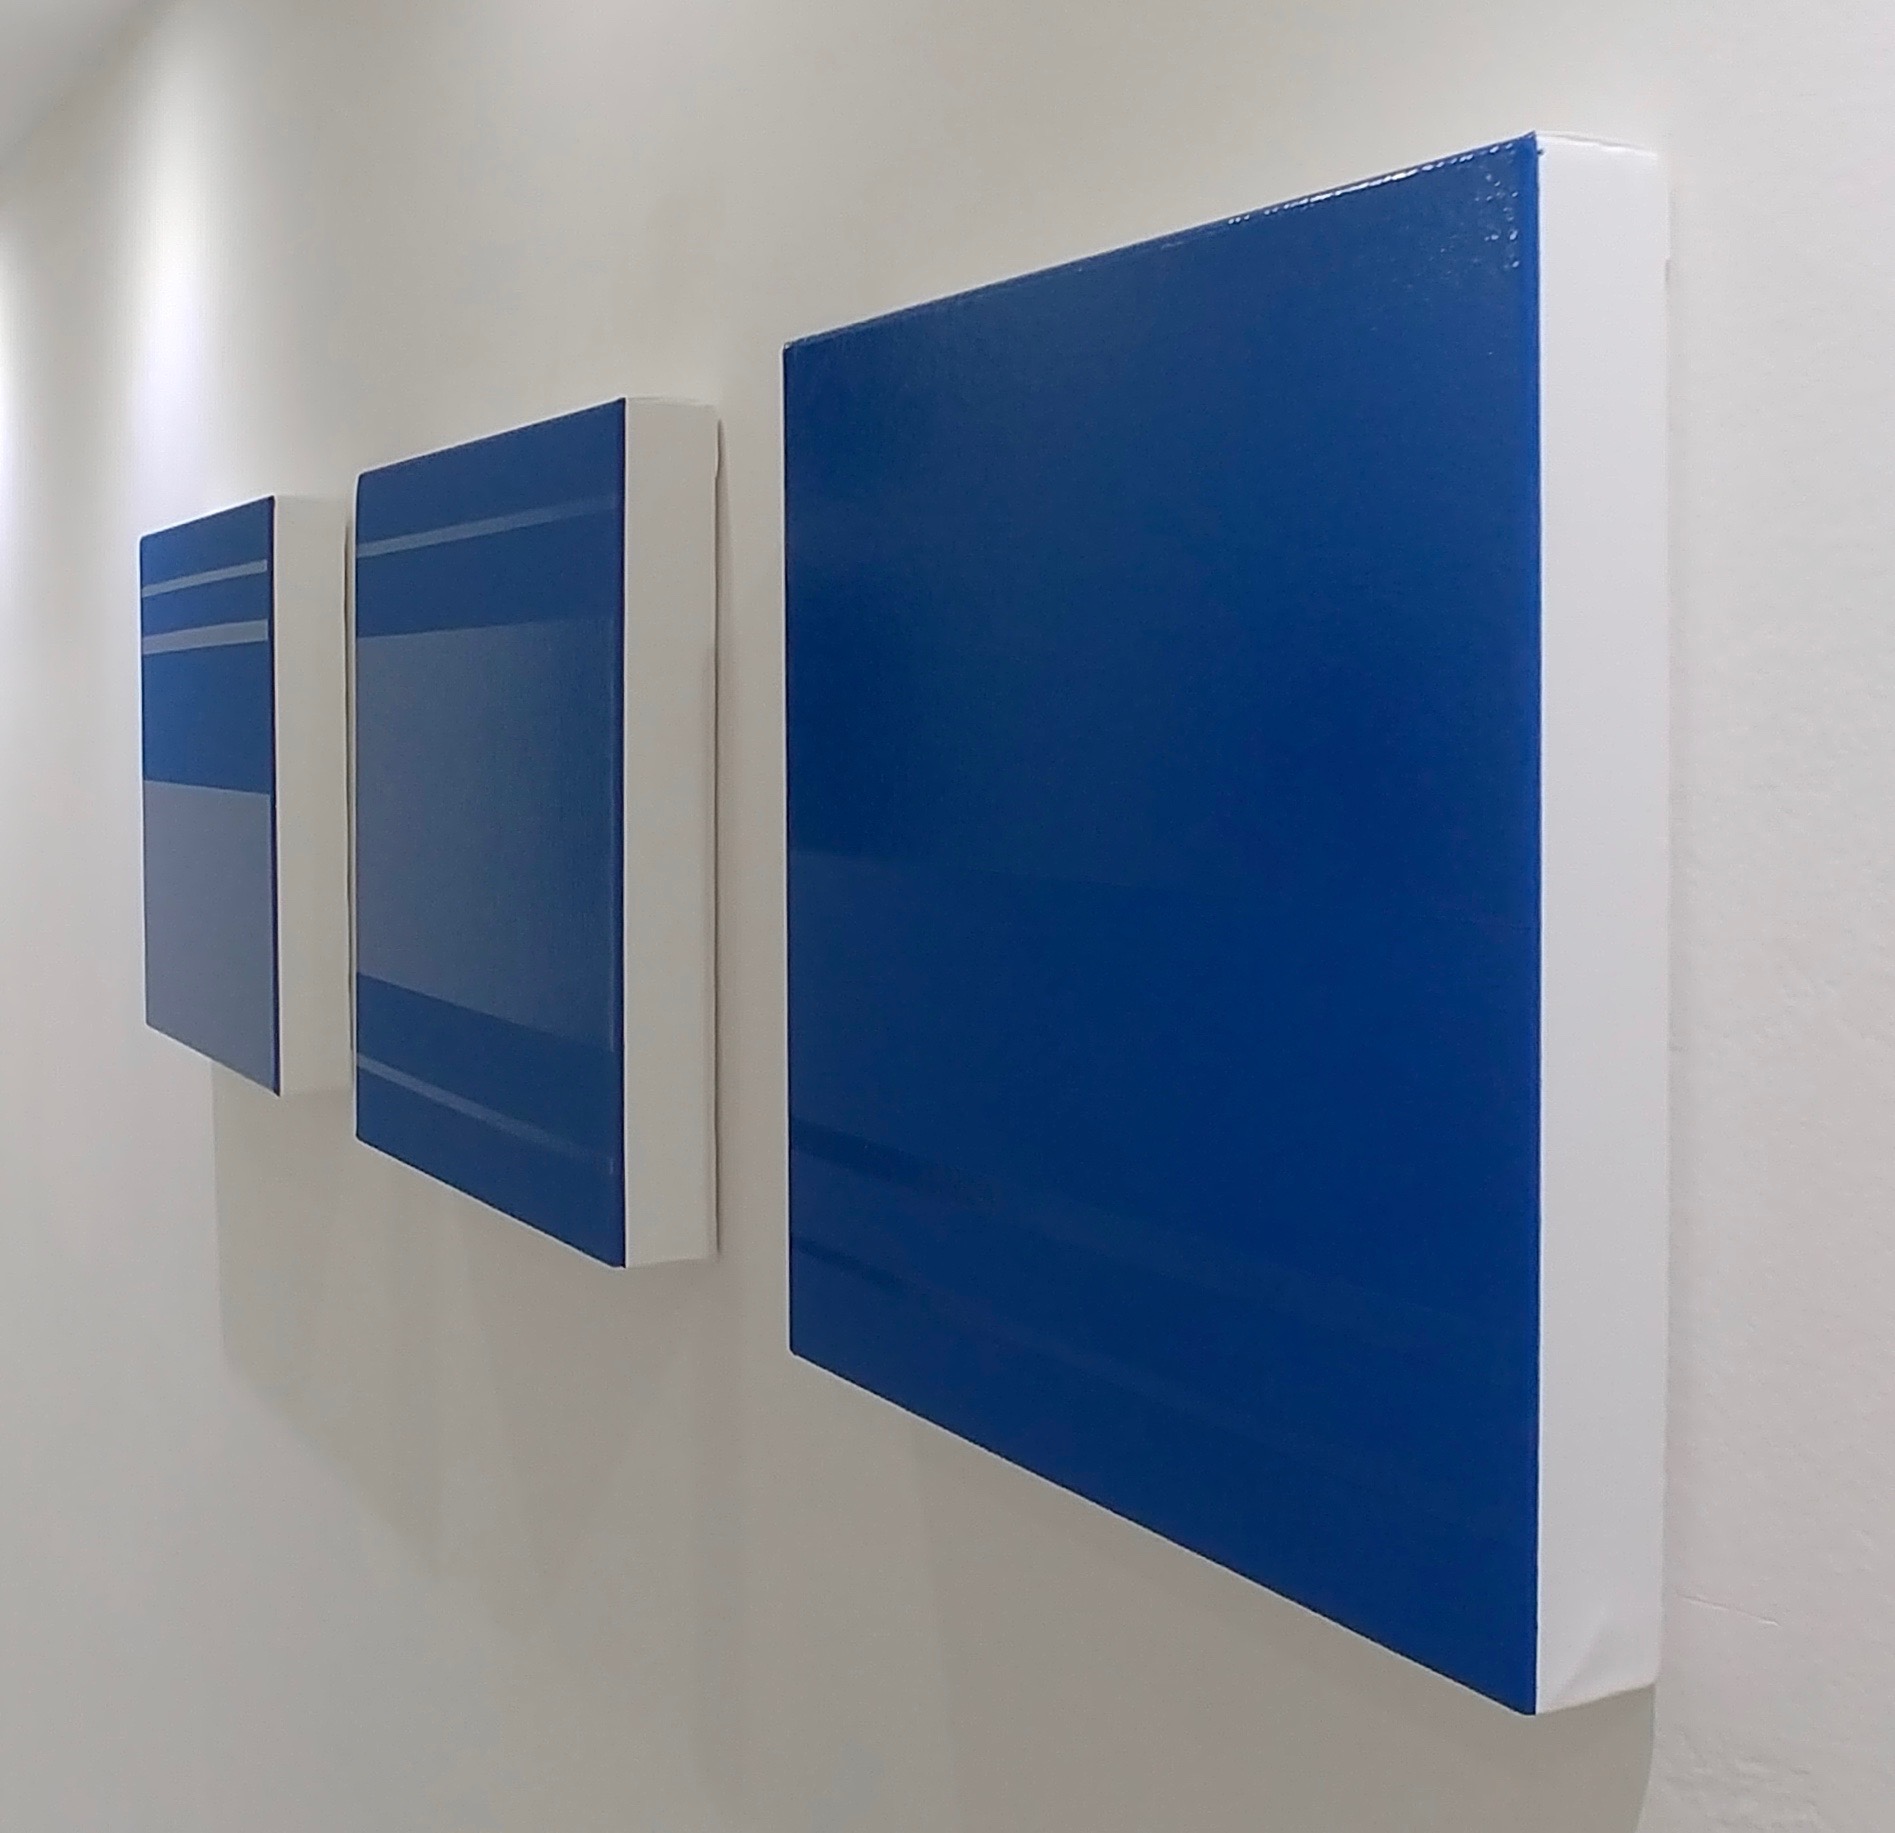 Philippe Chitarrini - Sans titre (bleu/bleu) - Triptyque Acrylique mate et huile brillante sur toile - 30 x 30 x 4 cm chaque élément - 2022, Galerie Floss & Schultz